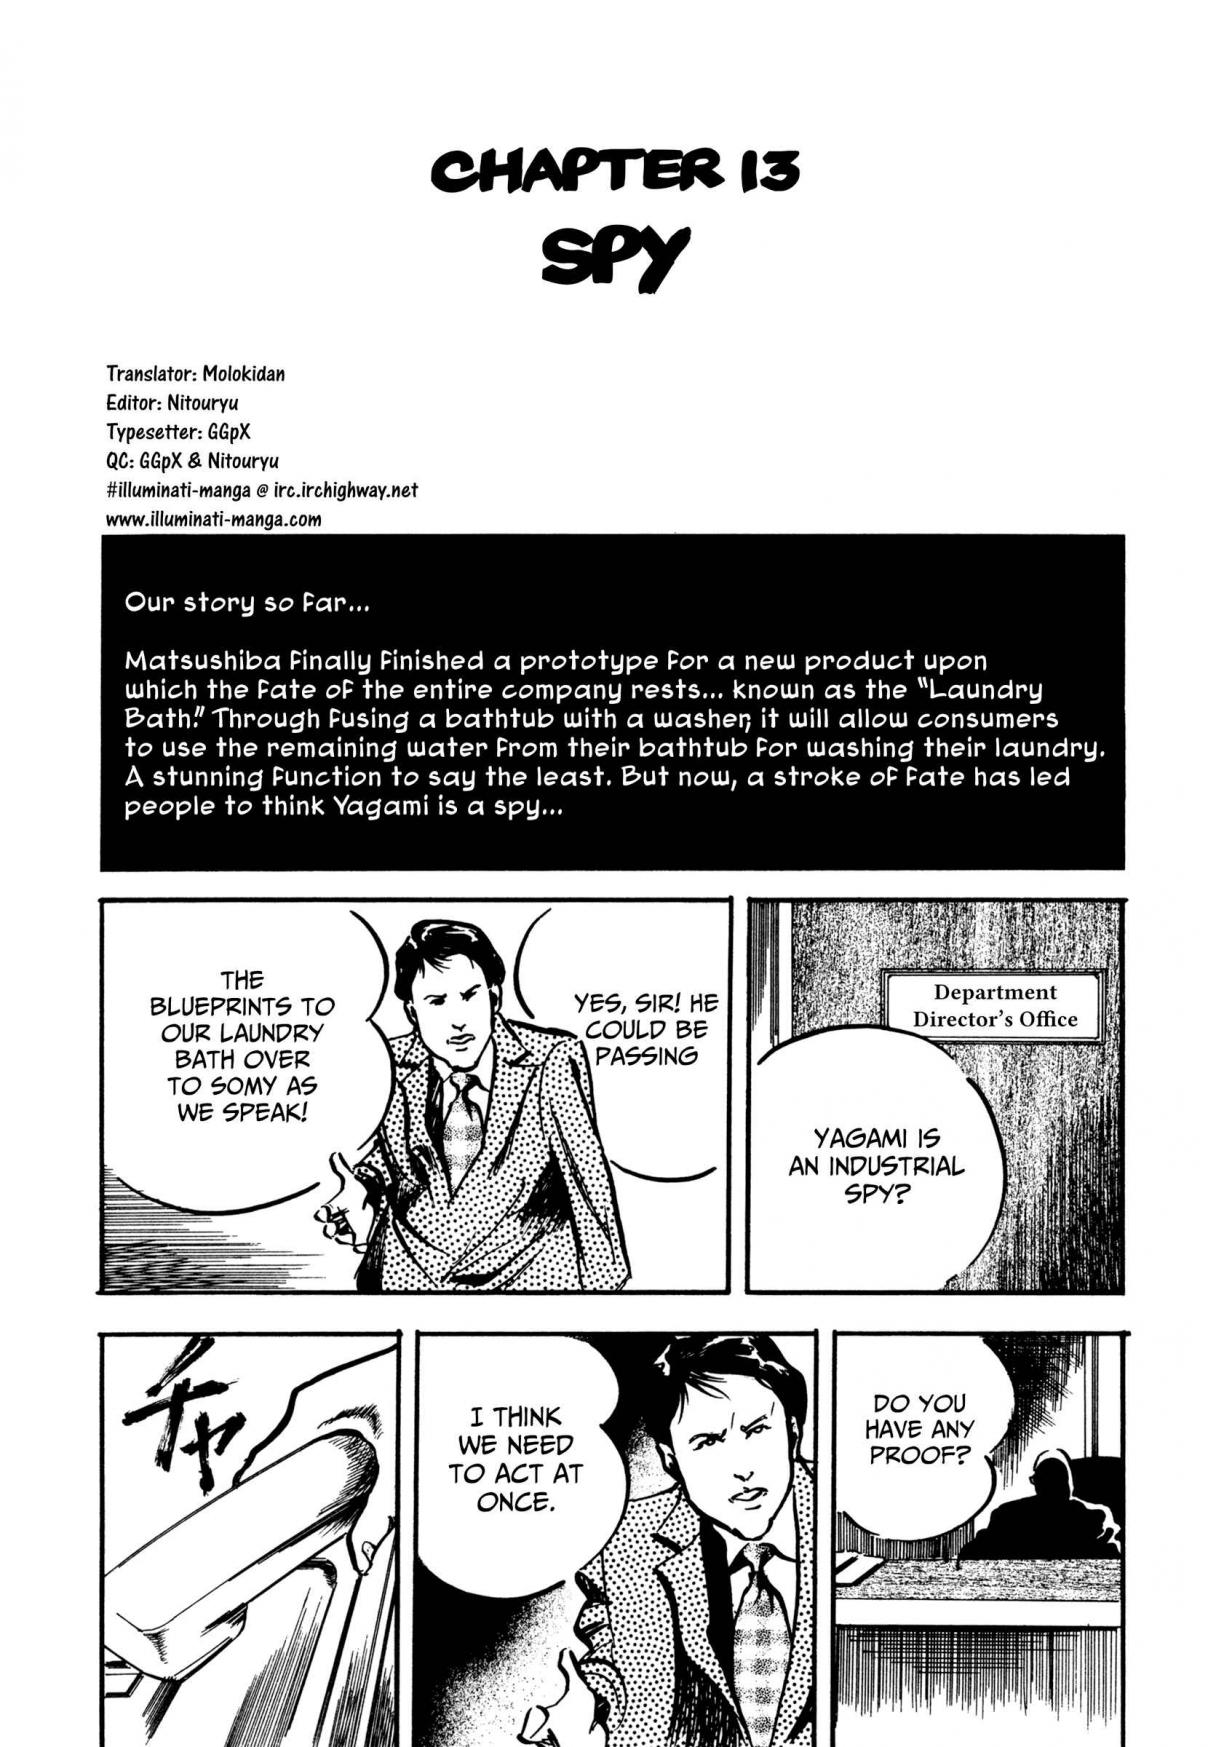 Kachou Baka Ichidachi Vol. 1 Ch. 13 Spy